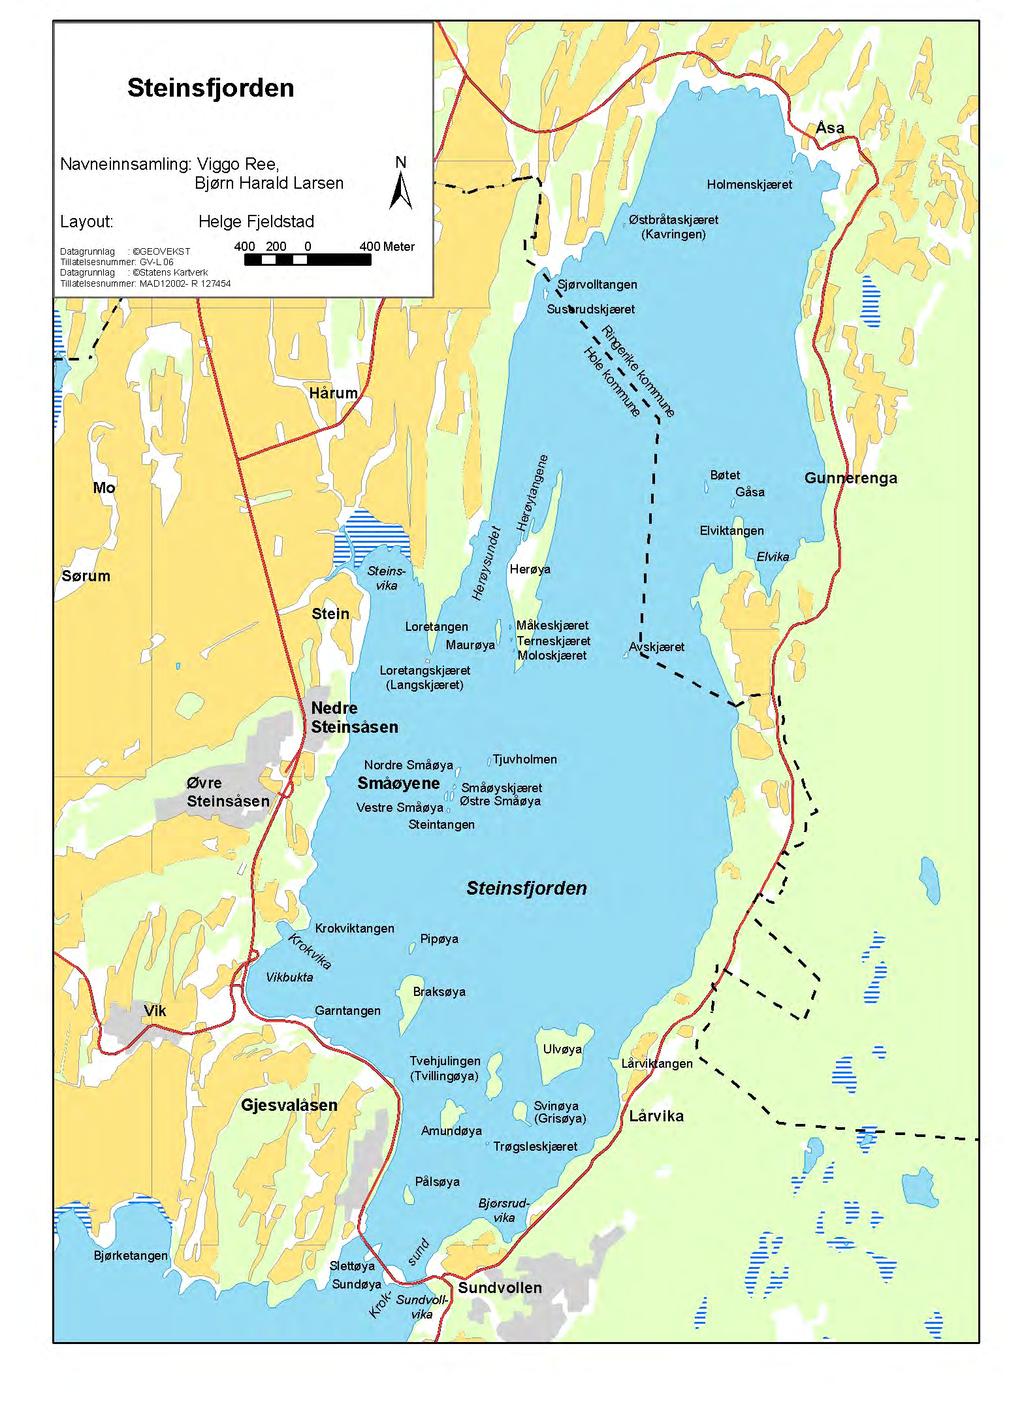 Figur 3. Steinsfjorden med navn på øyer og viker/bukter som er viktige hekkelokaliteter for vannfugl.